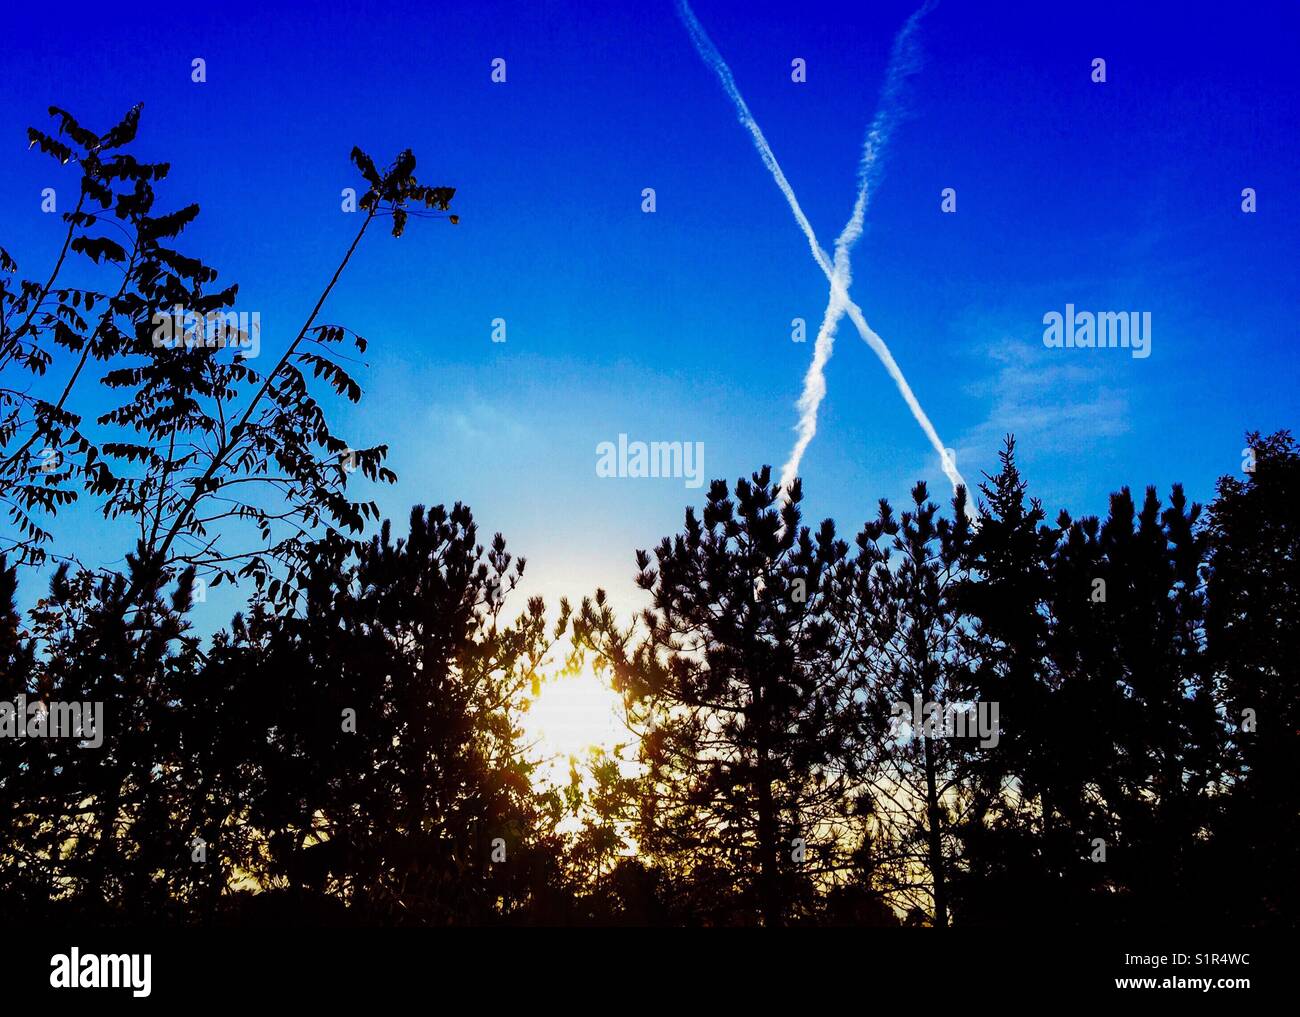 Les courants-jets, faire un x dans le ciel au coucher du soleil à Orono (Ontario) Canada Banque D'Images